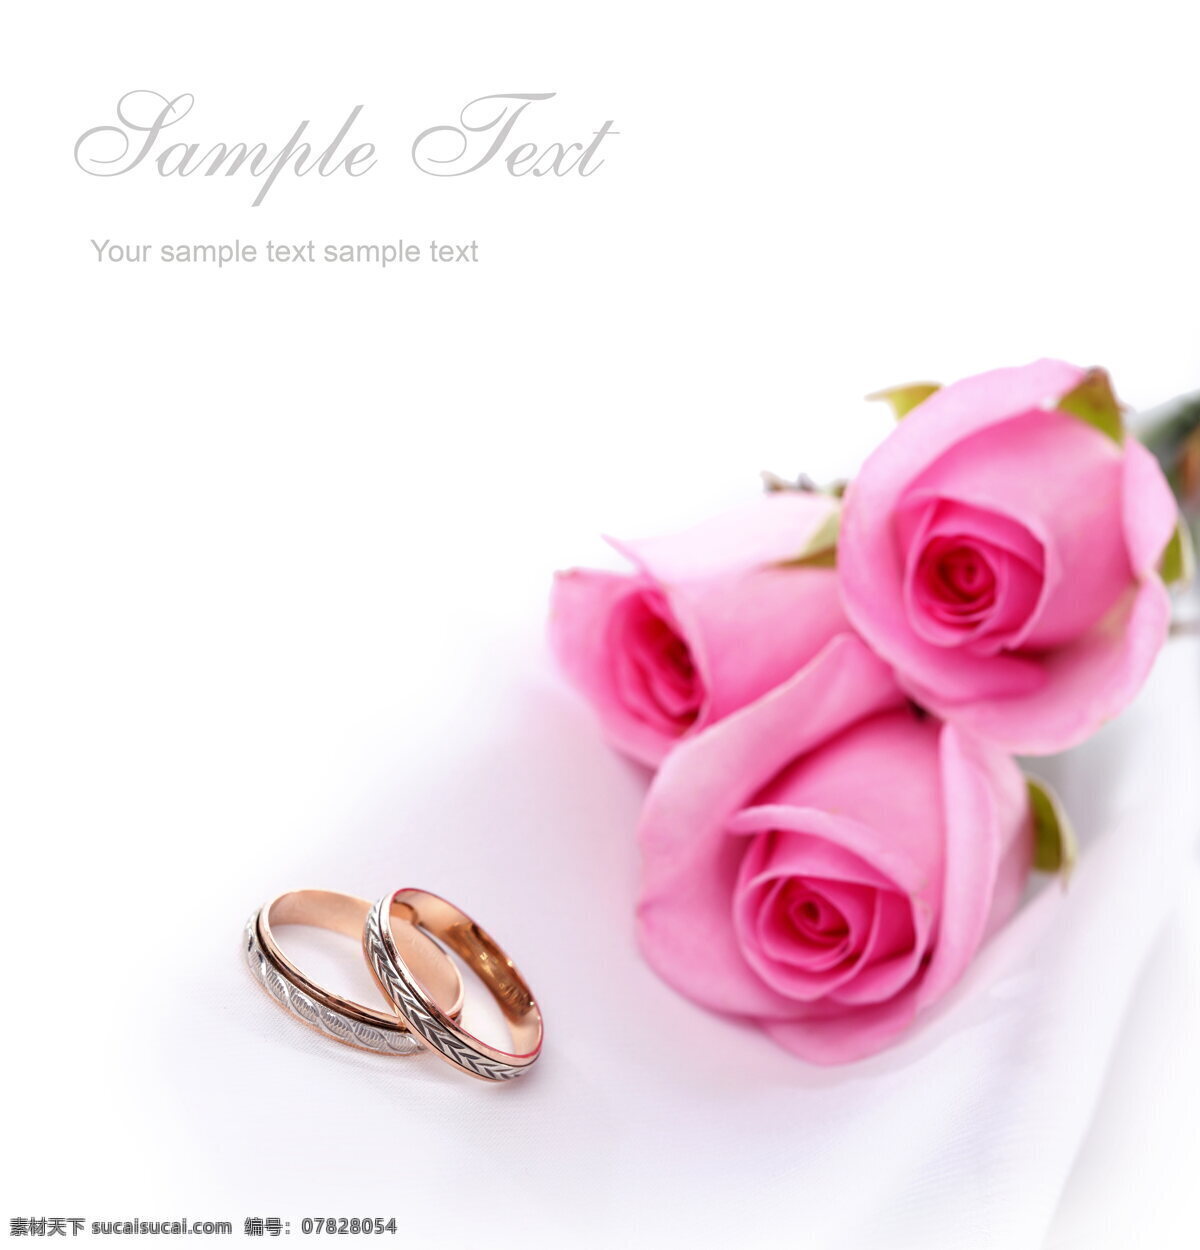 粉色 玫瑰花 戒指 高清 结婚戒指 金戒指 对戒 情侣戒指 黄金